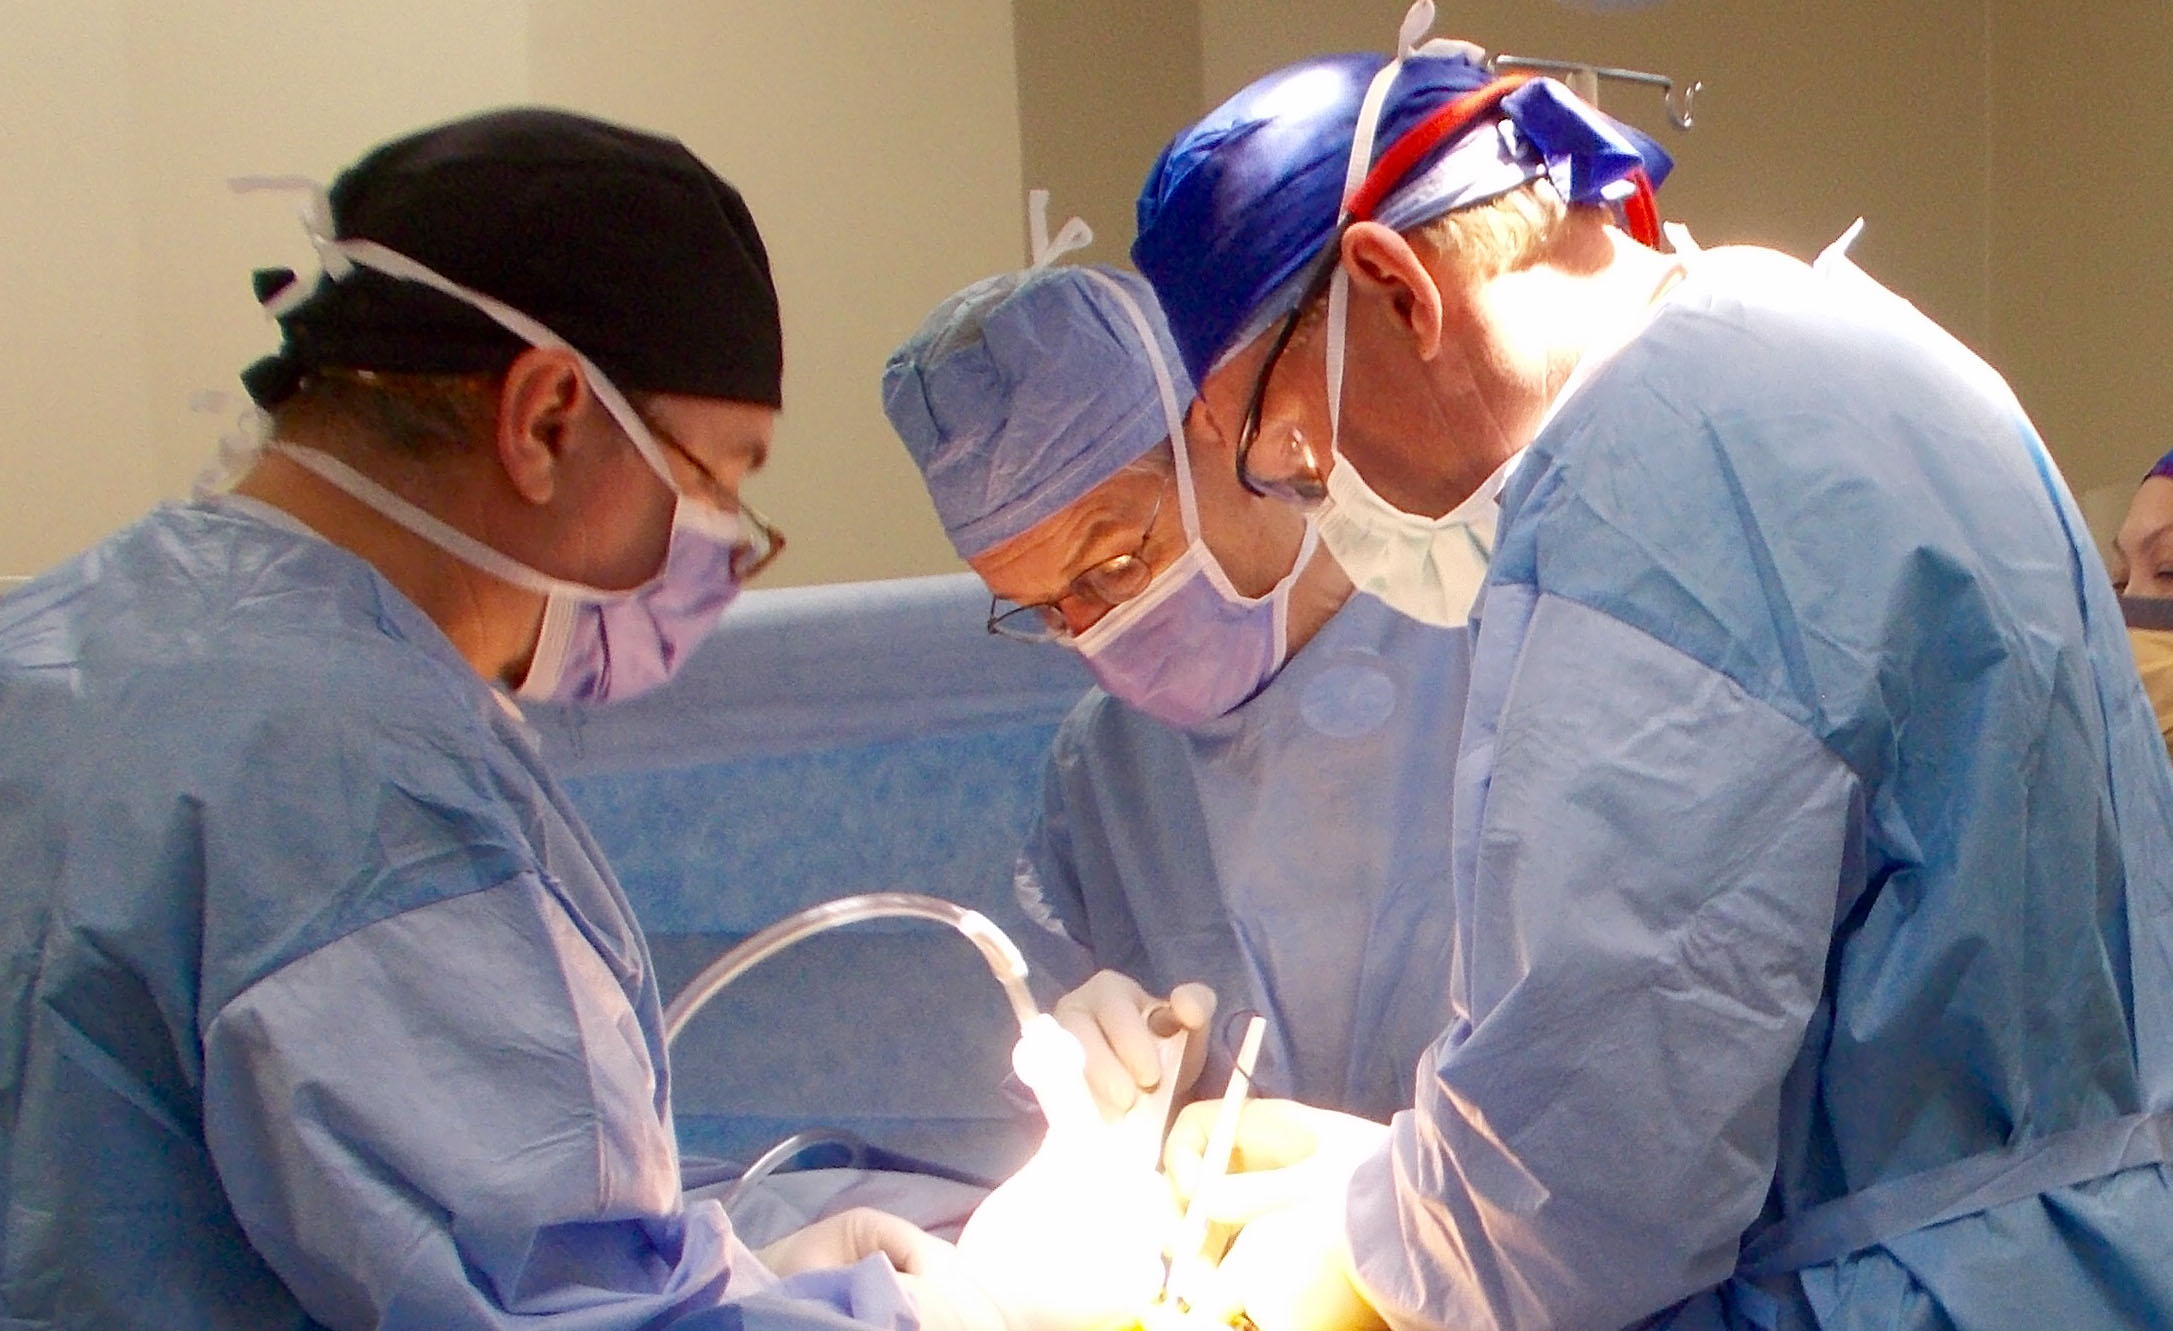 Prescott orthopedic surgeon's charity offers hope to ...